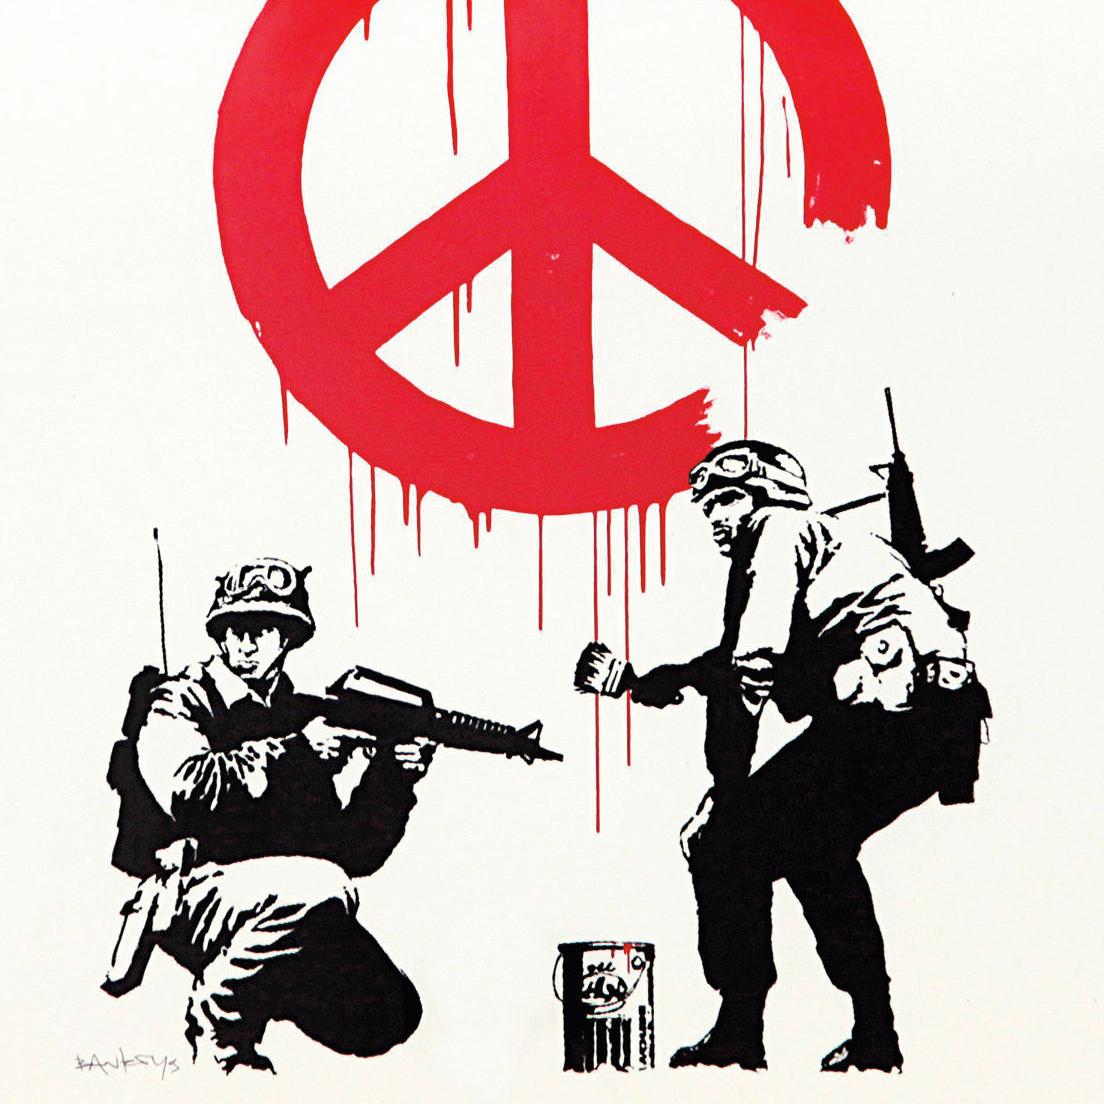 Le commandement selon Banksy